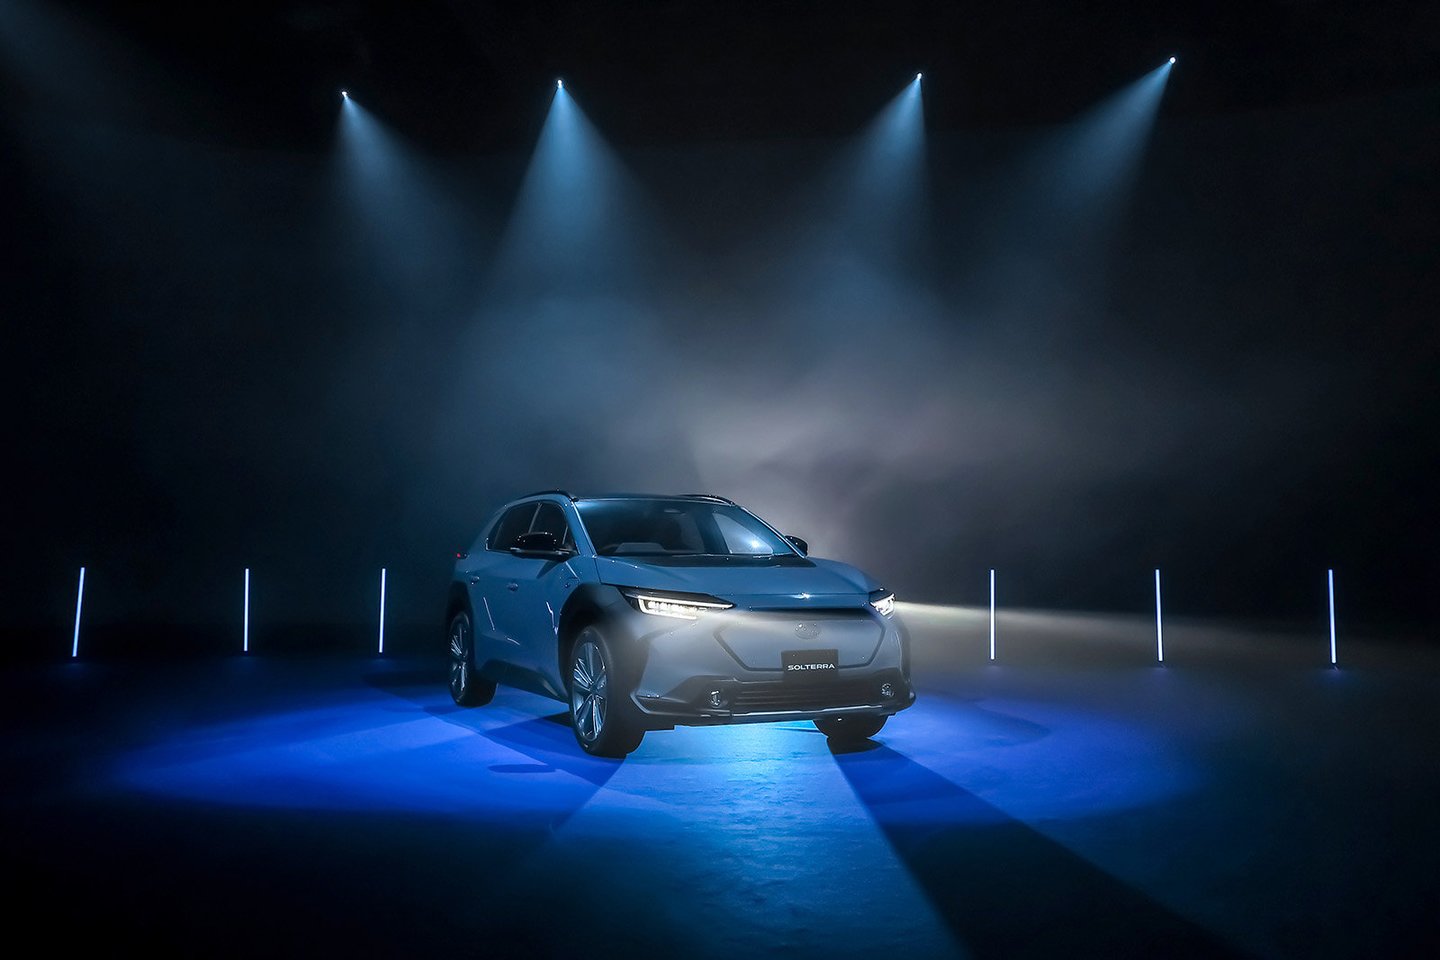 2021 metų 11 mėnesio 11 diena tapo pirmojo „Subaru“ elektromobilio oficialaus debiuto diena.<br>Pranešėjų spaudai nuotr.